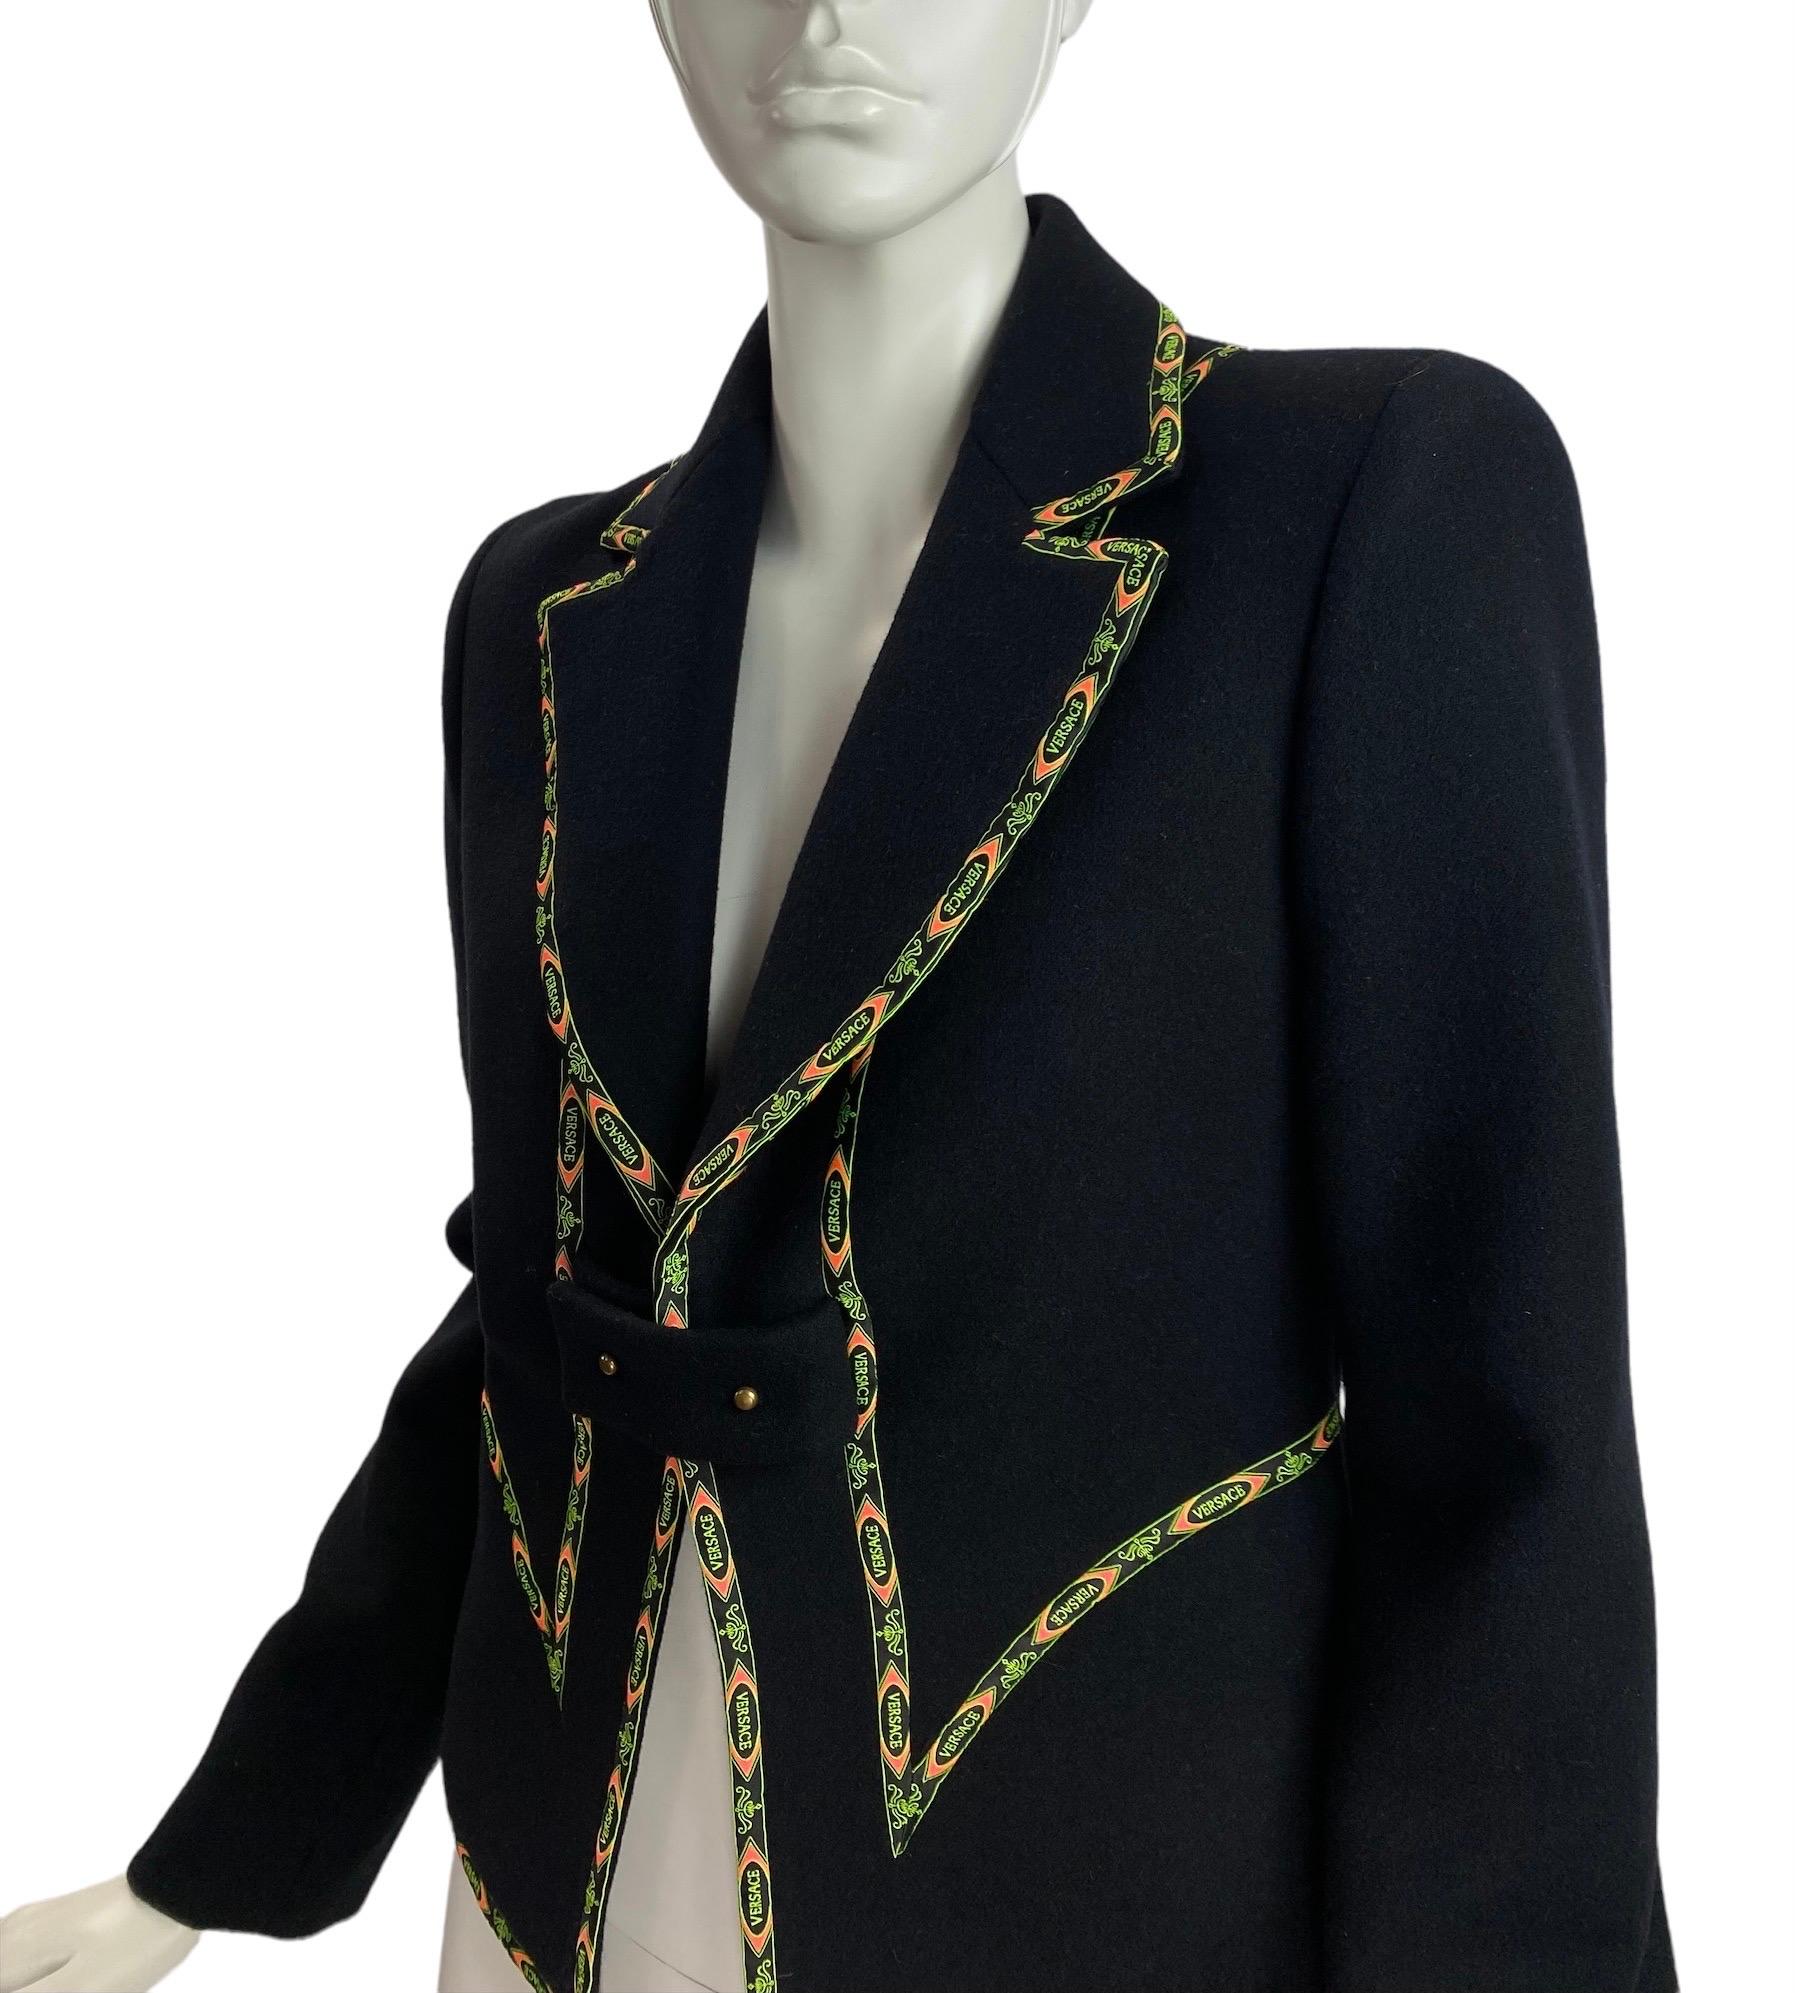 Vintage Gianni Versace Couture Schwarzer Blazer 
Kollektion F/W 2002
Italienische Größe 42 - US 6
Farbe schwarz, 100% Wolle, Versace-Signatur, vollständig gefüttert.
Maße: Büste 36 Zoll, Schultern 16